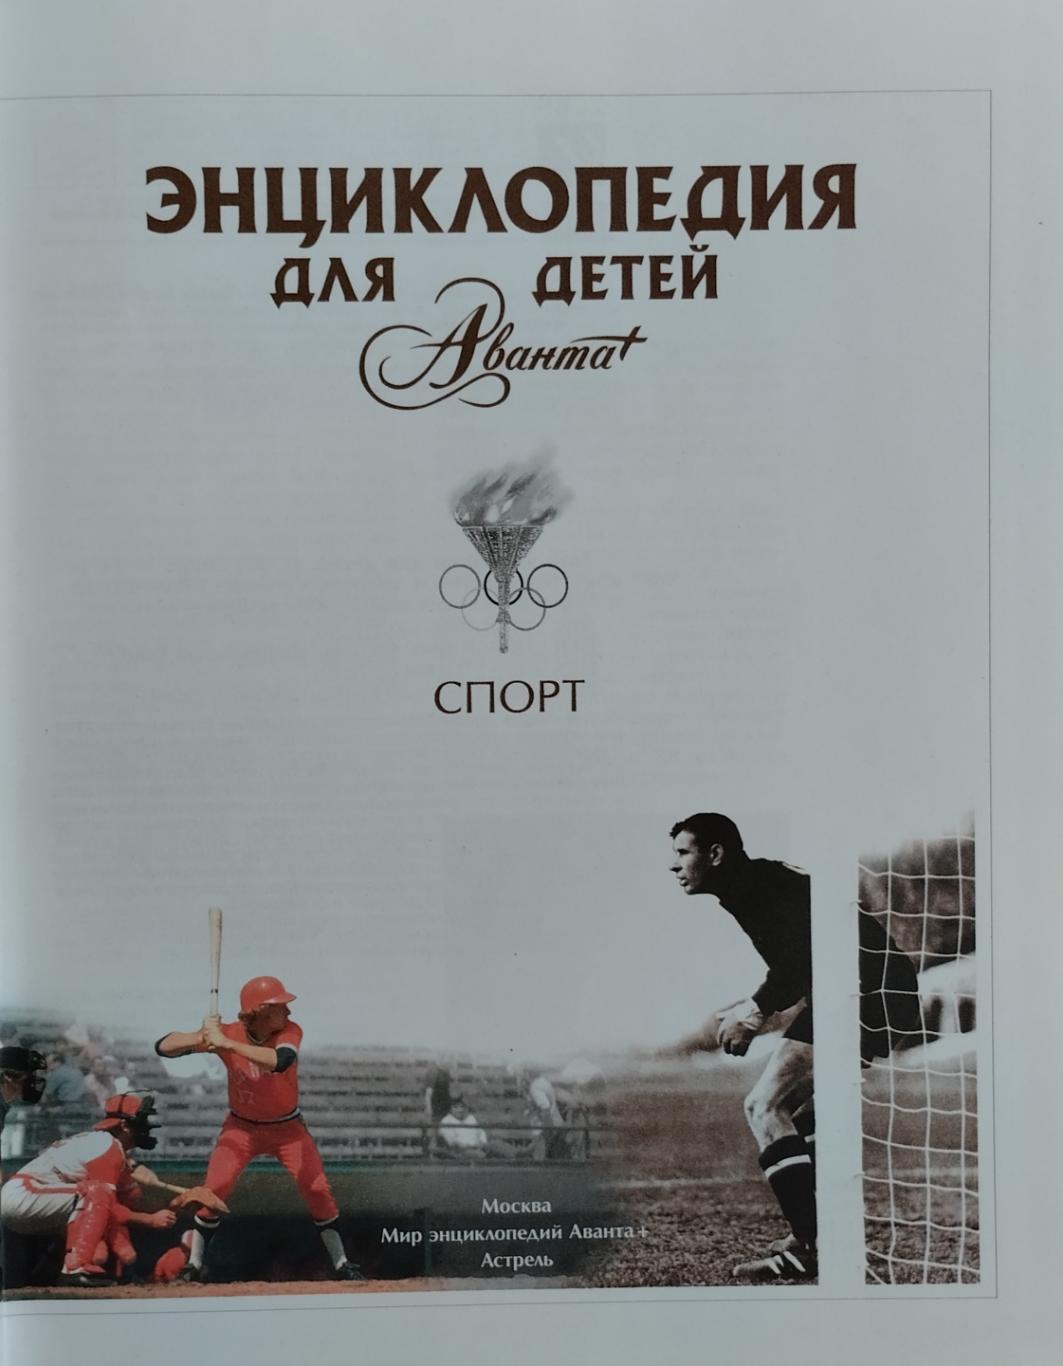 Энциклопедия для детей. Спорт. 2008. 624 стр. 1